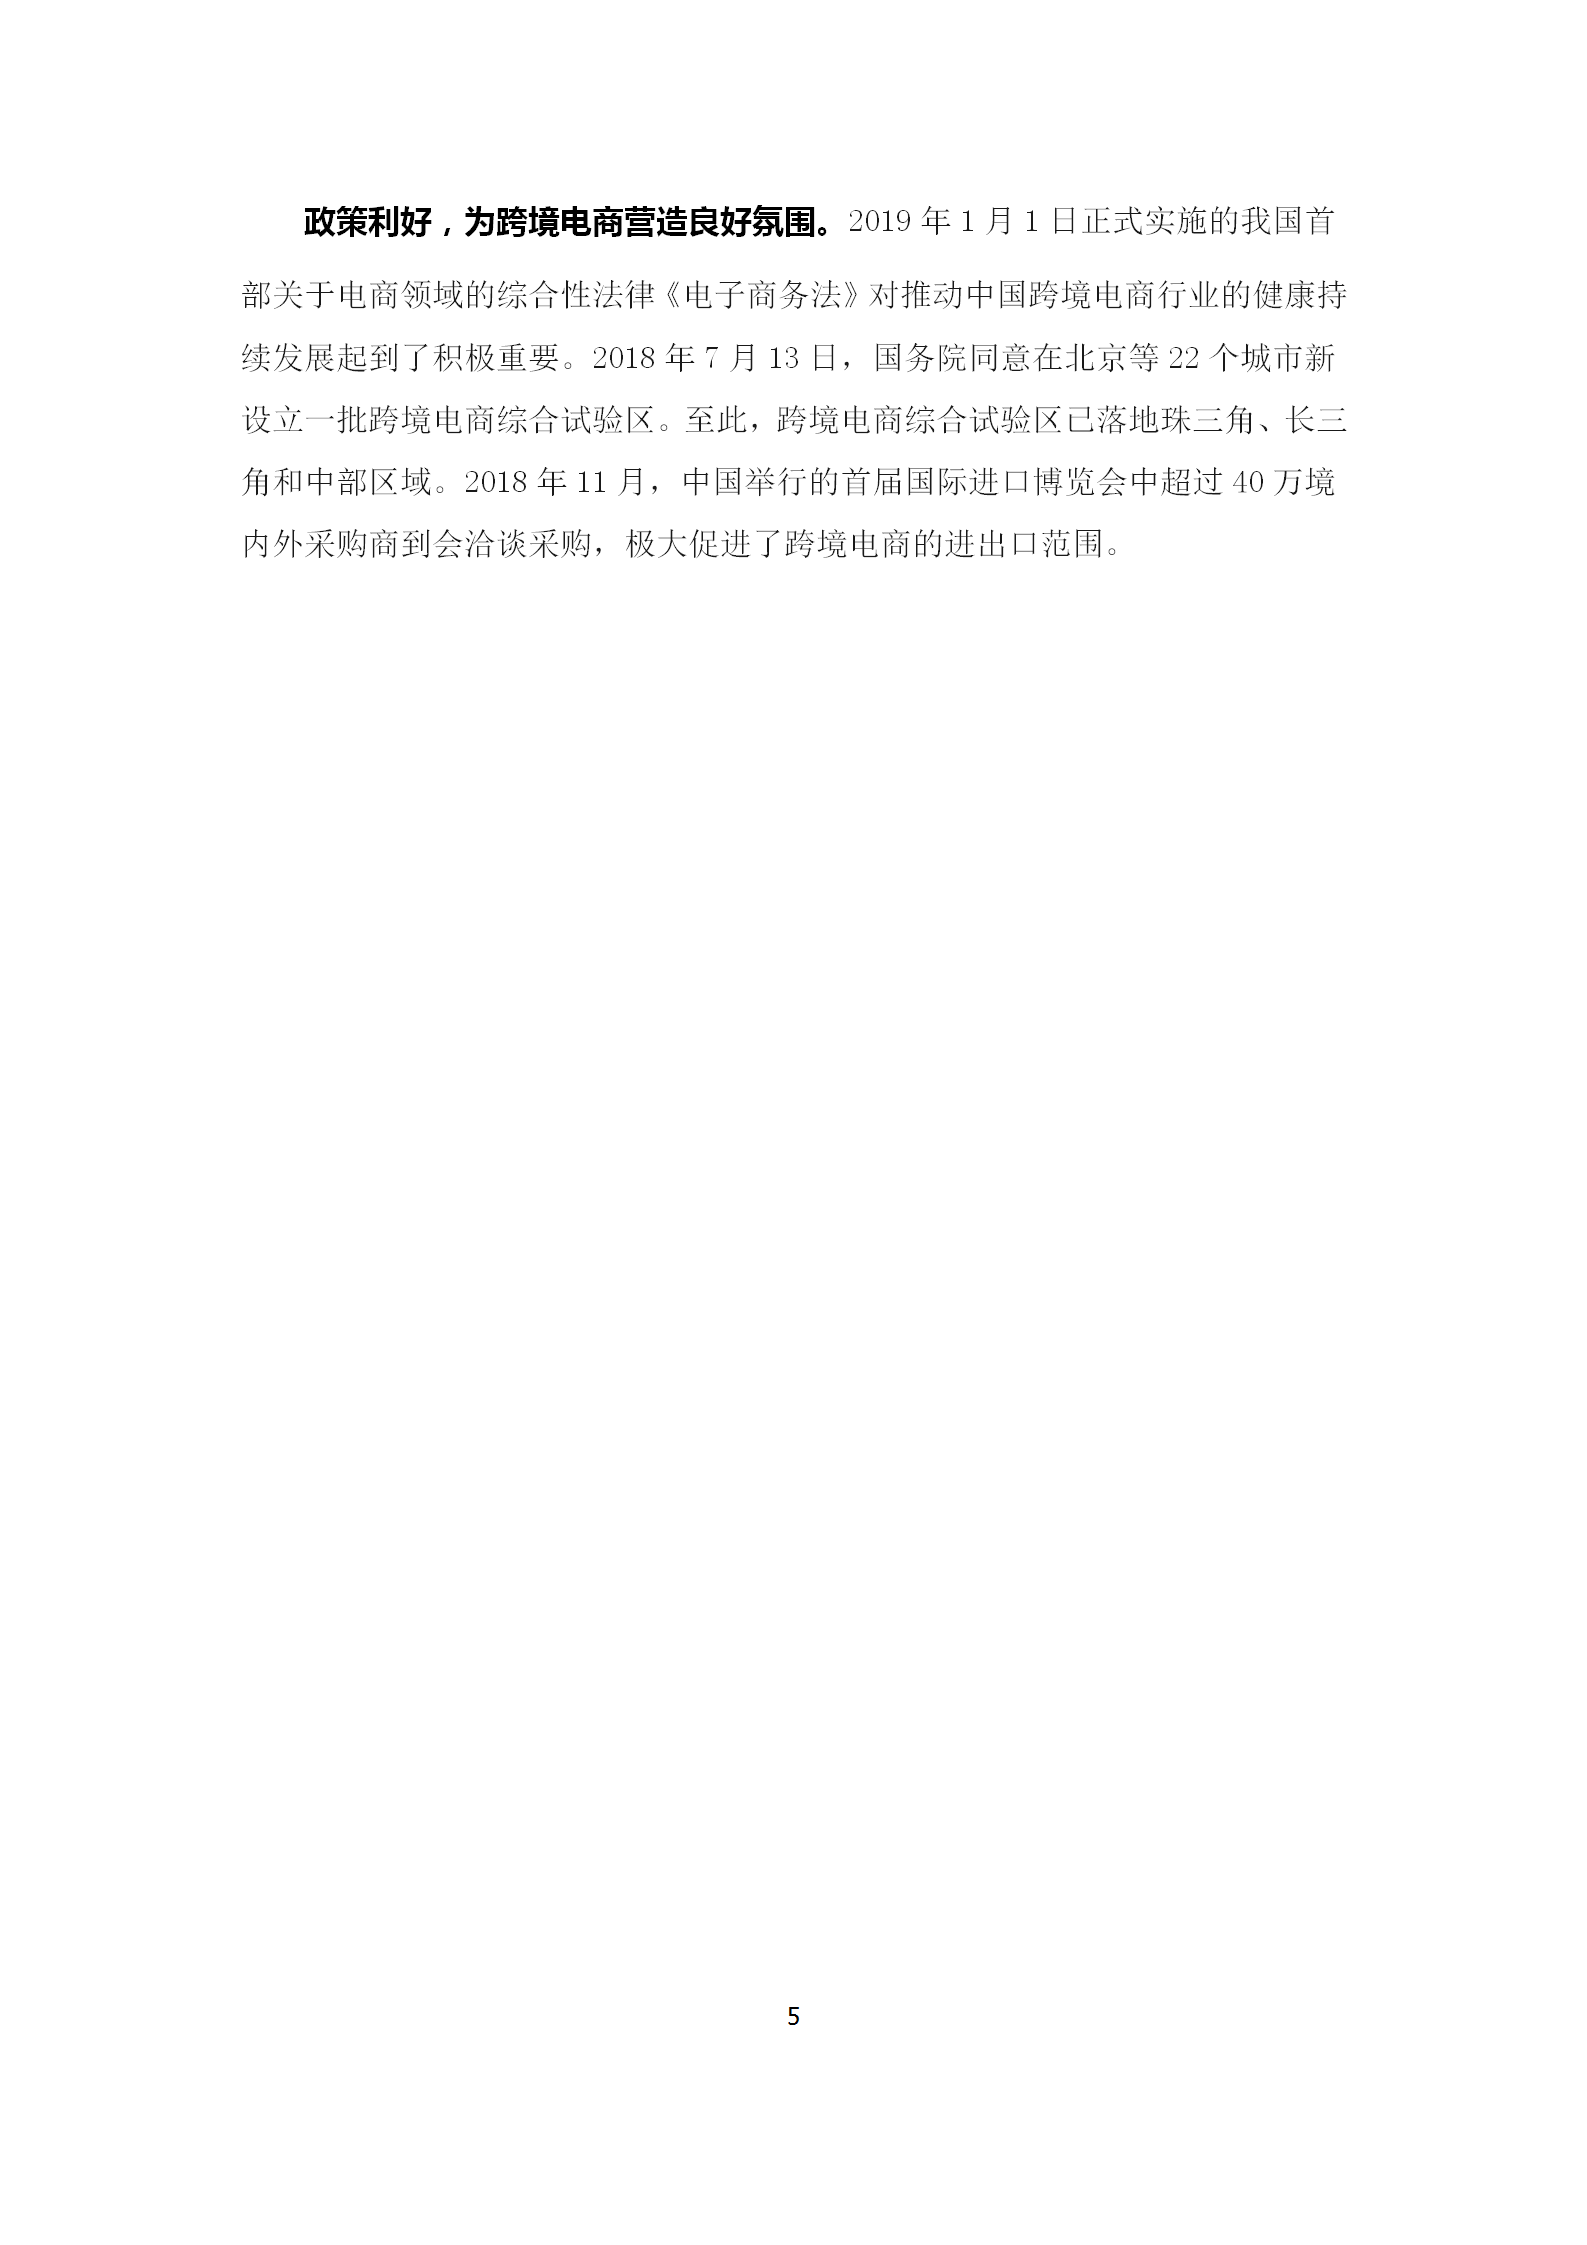 新疆跨境电子商务发展调研报告(2019)_08.png